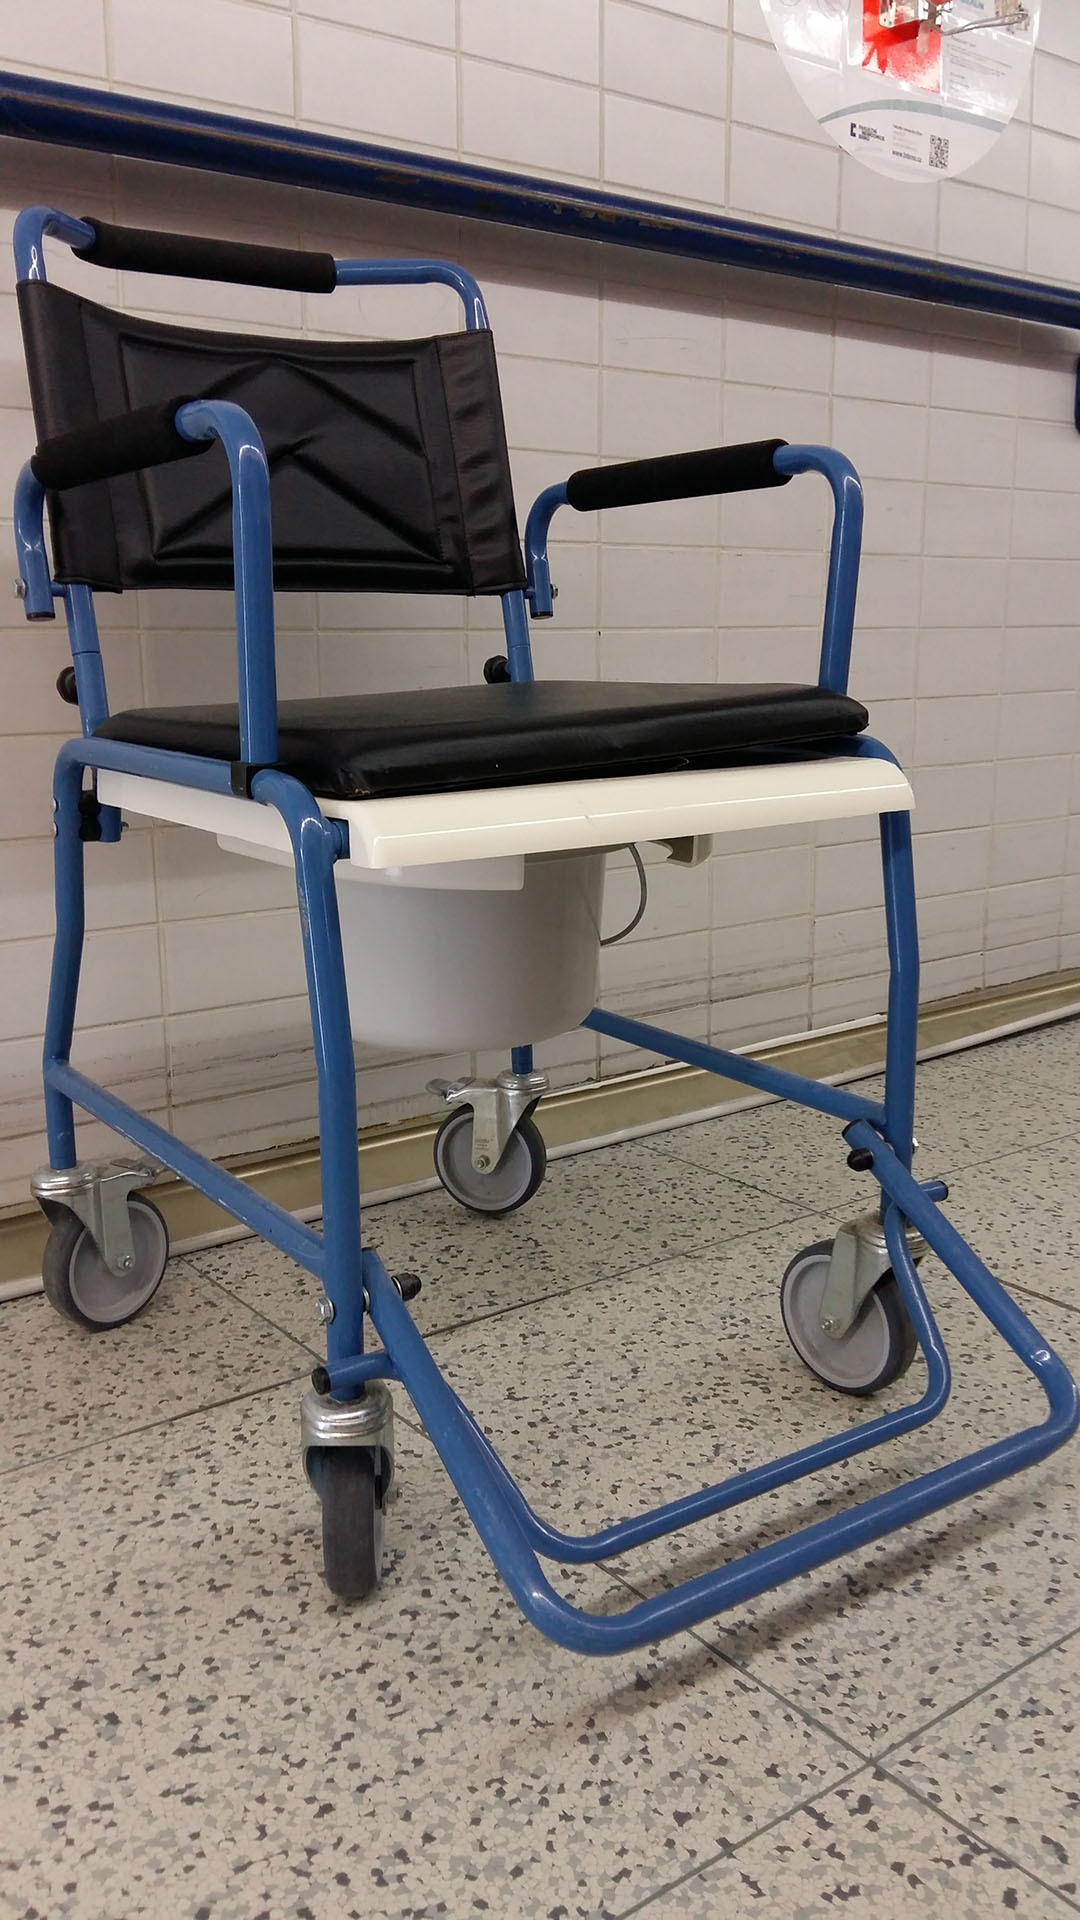 Toilet wheelchair